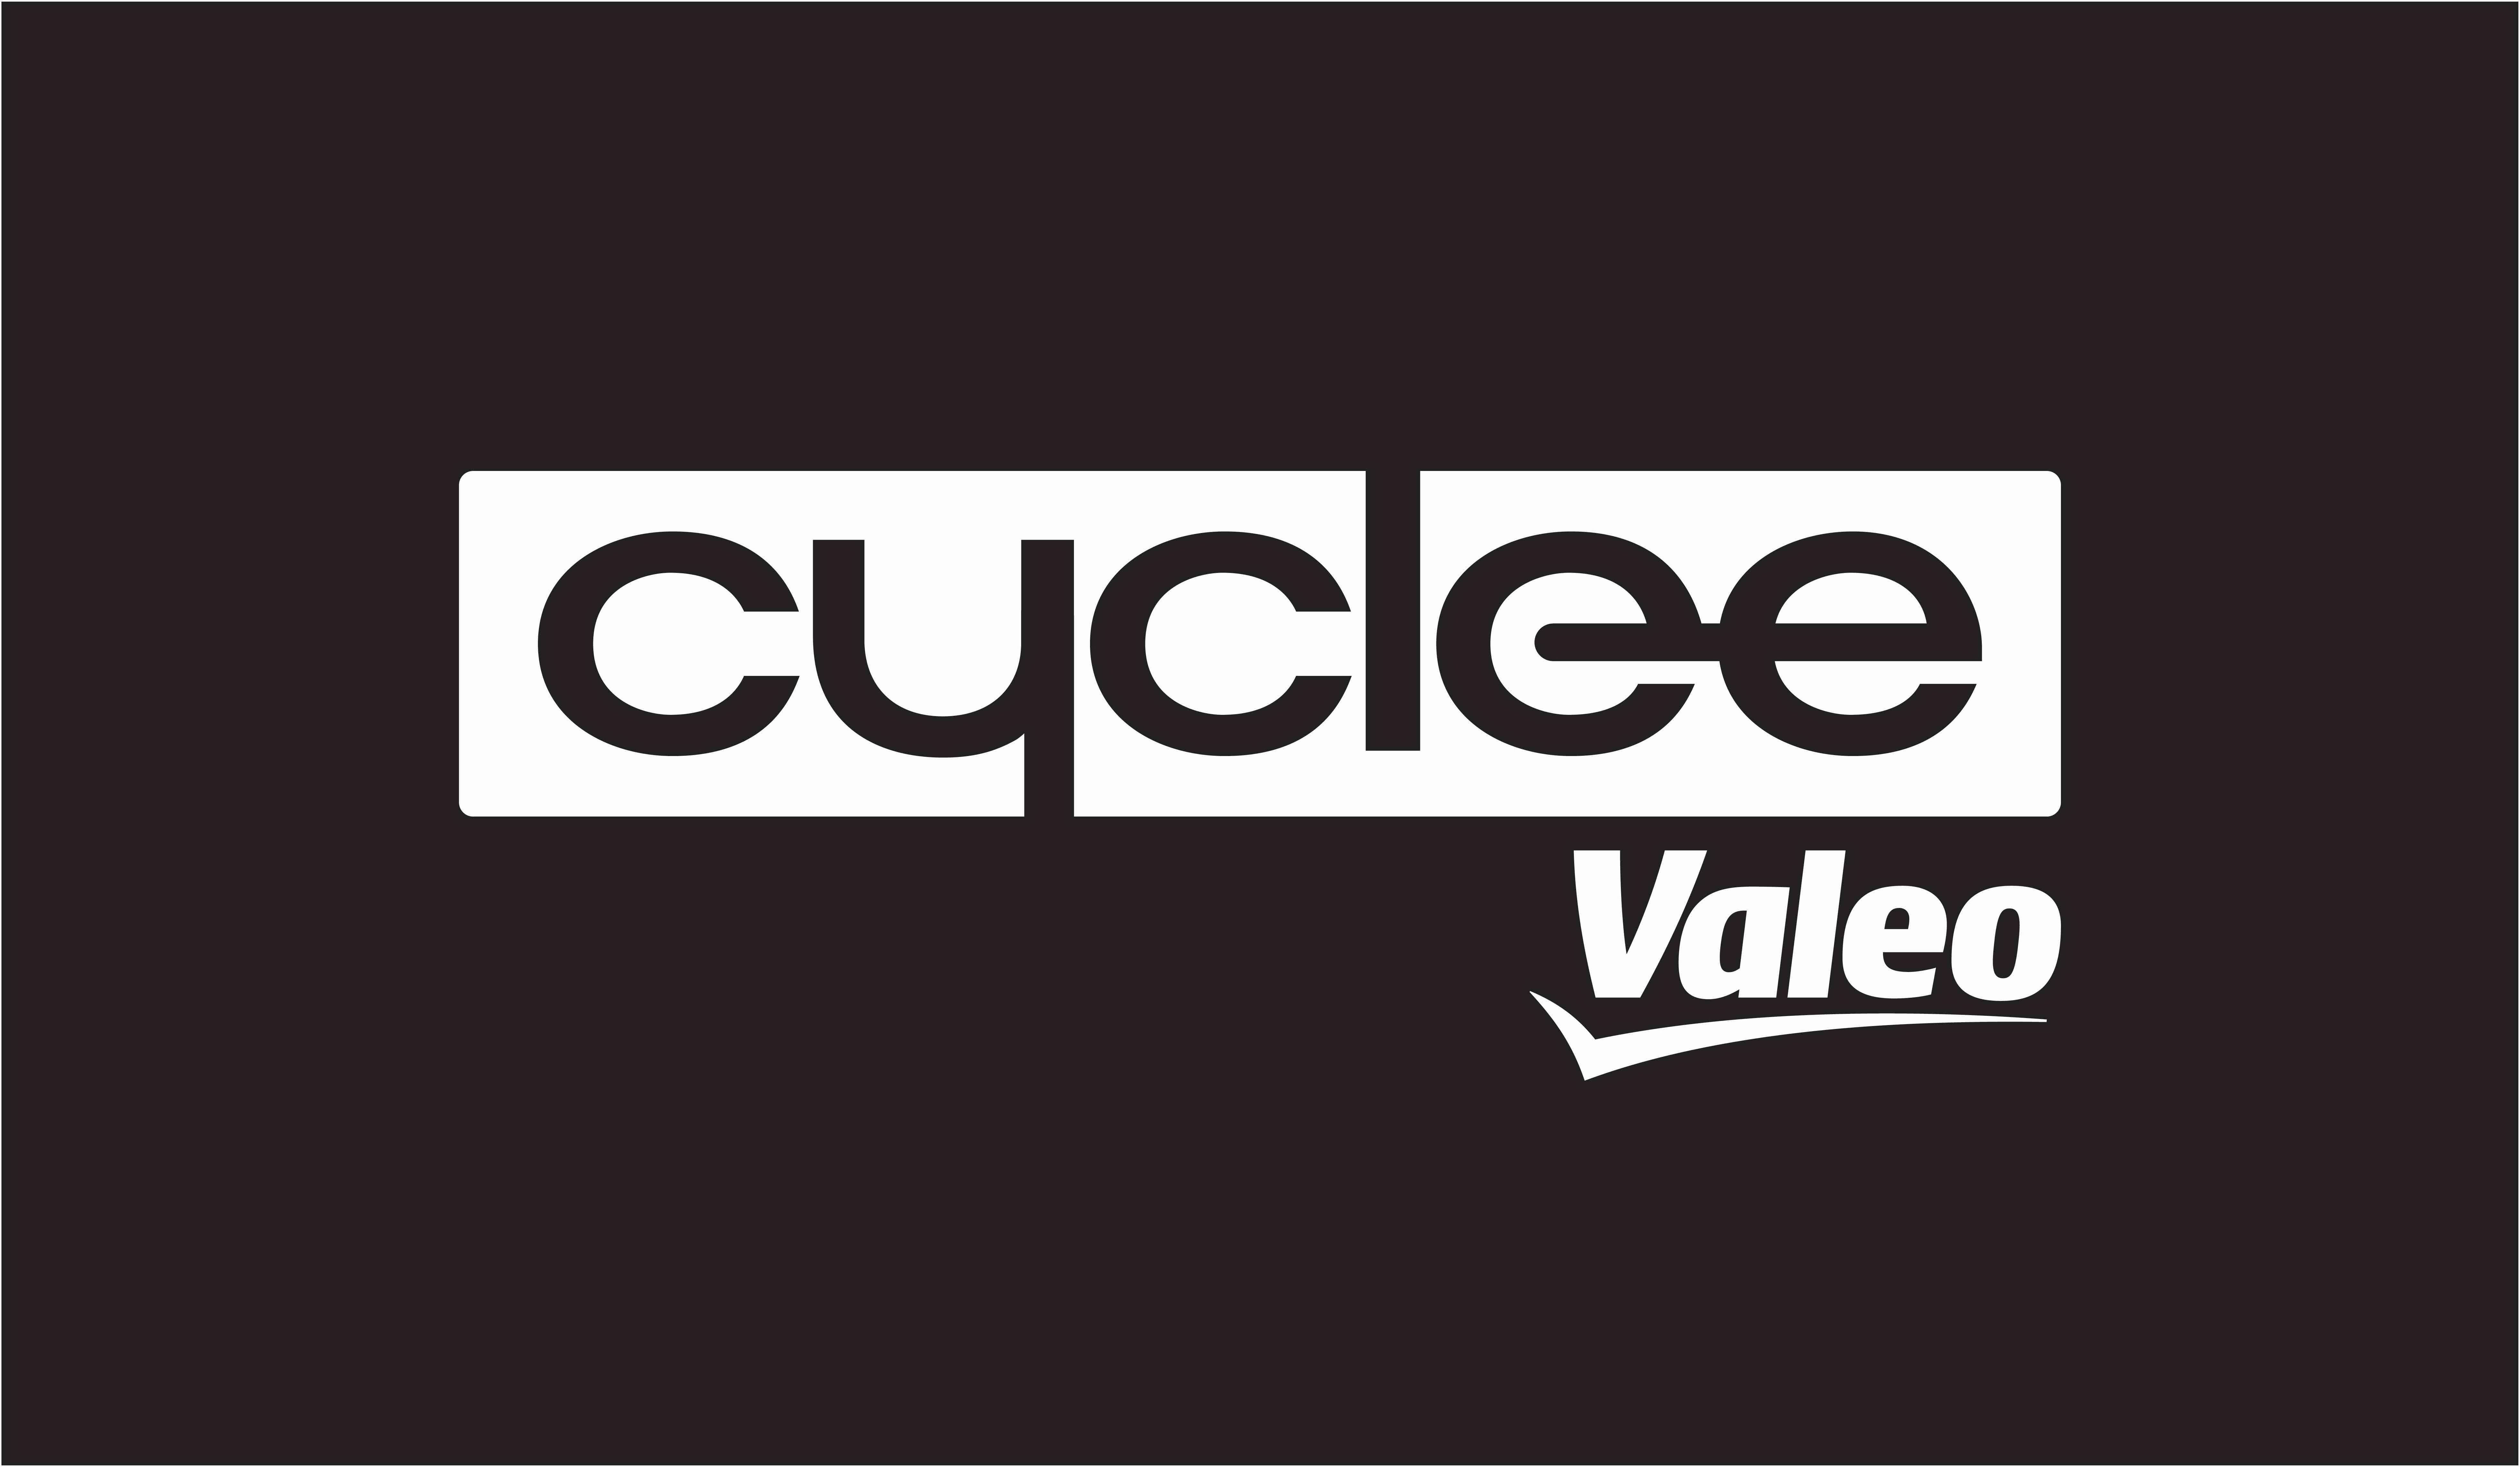  CYCLEE VALEO